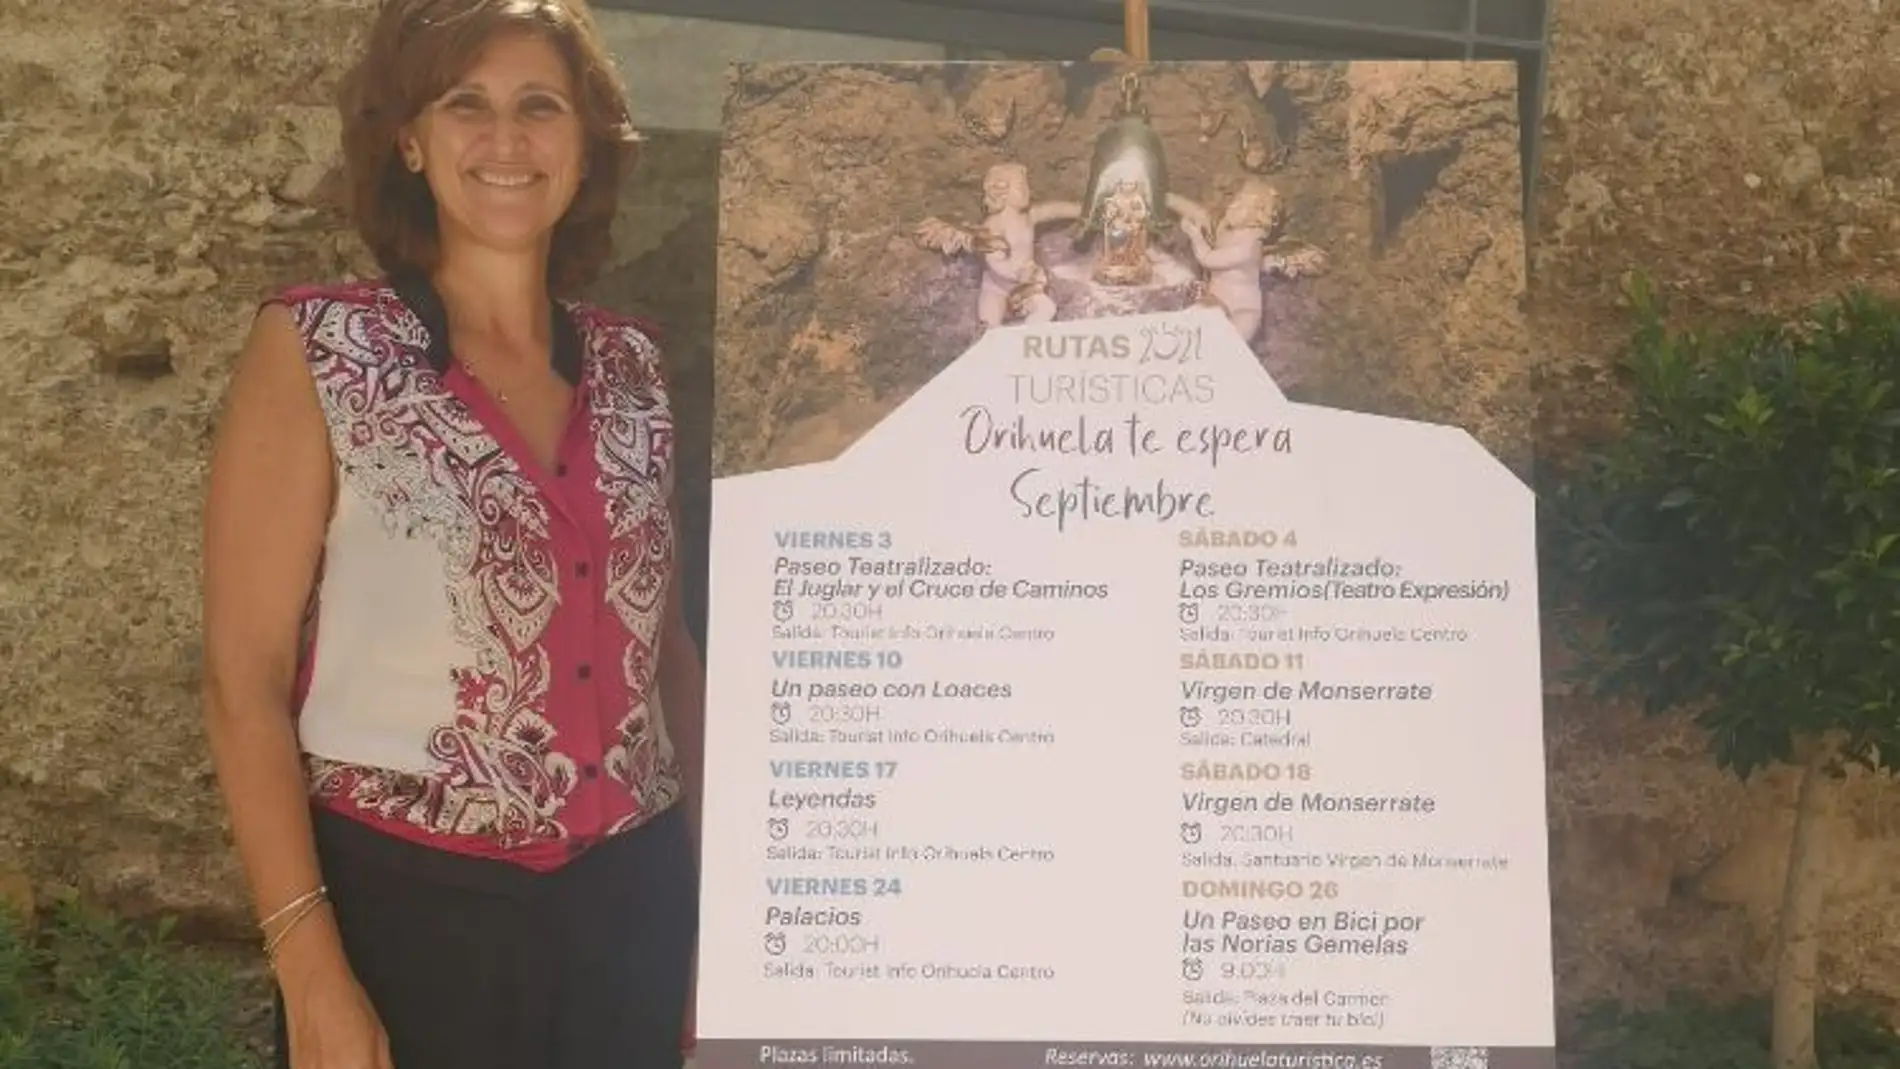 La Virgen de Monserrate protagonista de las rutas turísticas de Orihuela en septiembre 